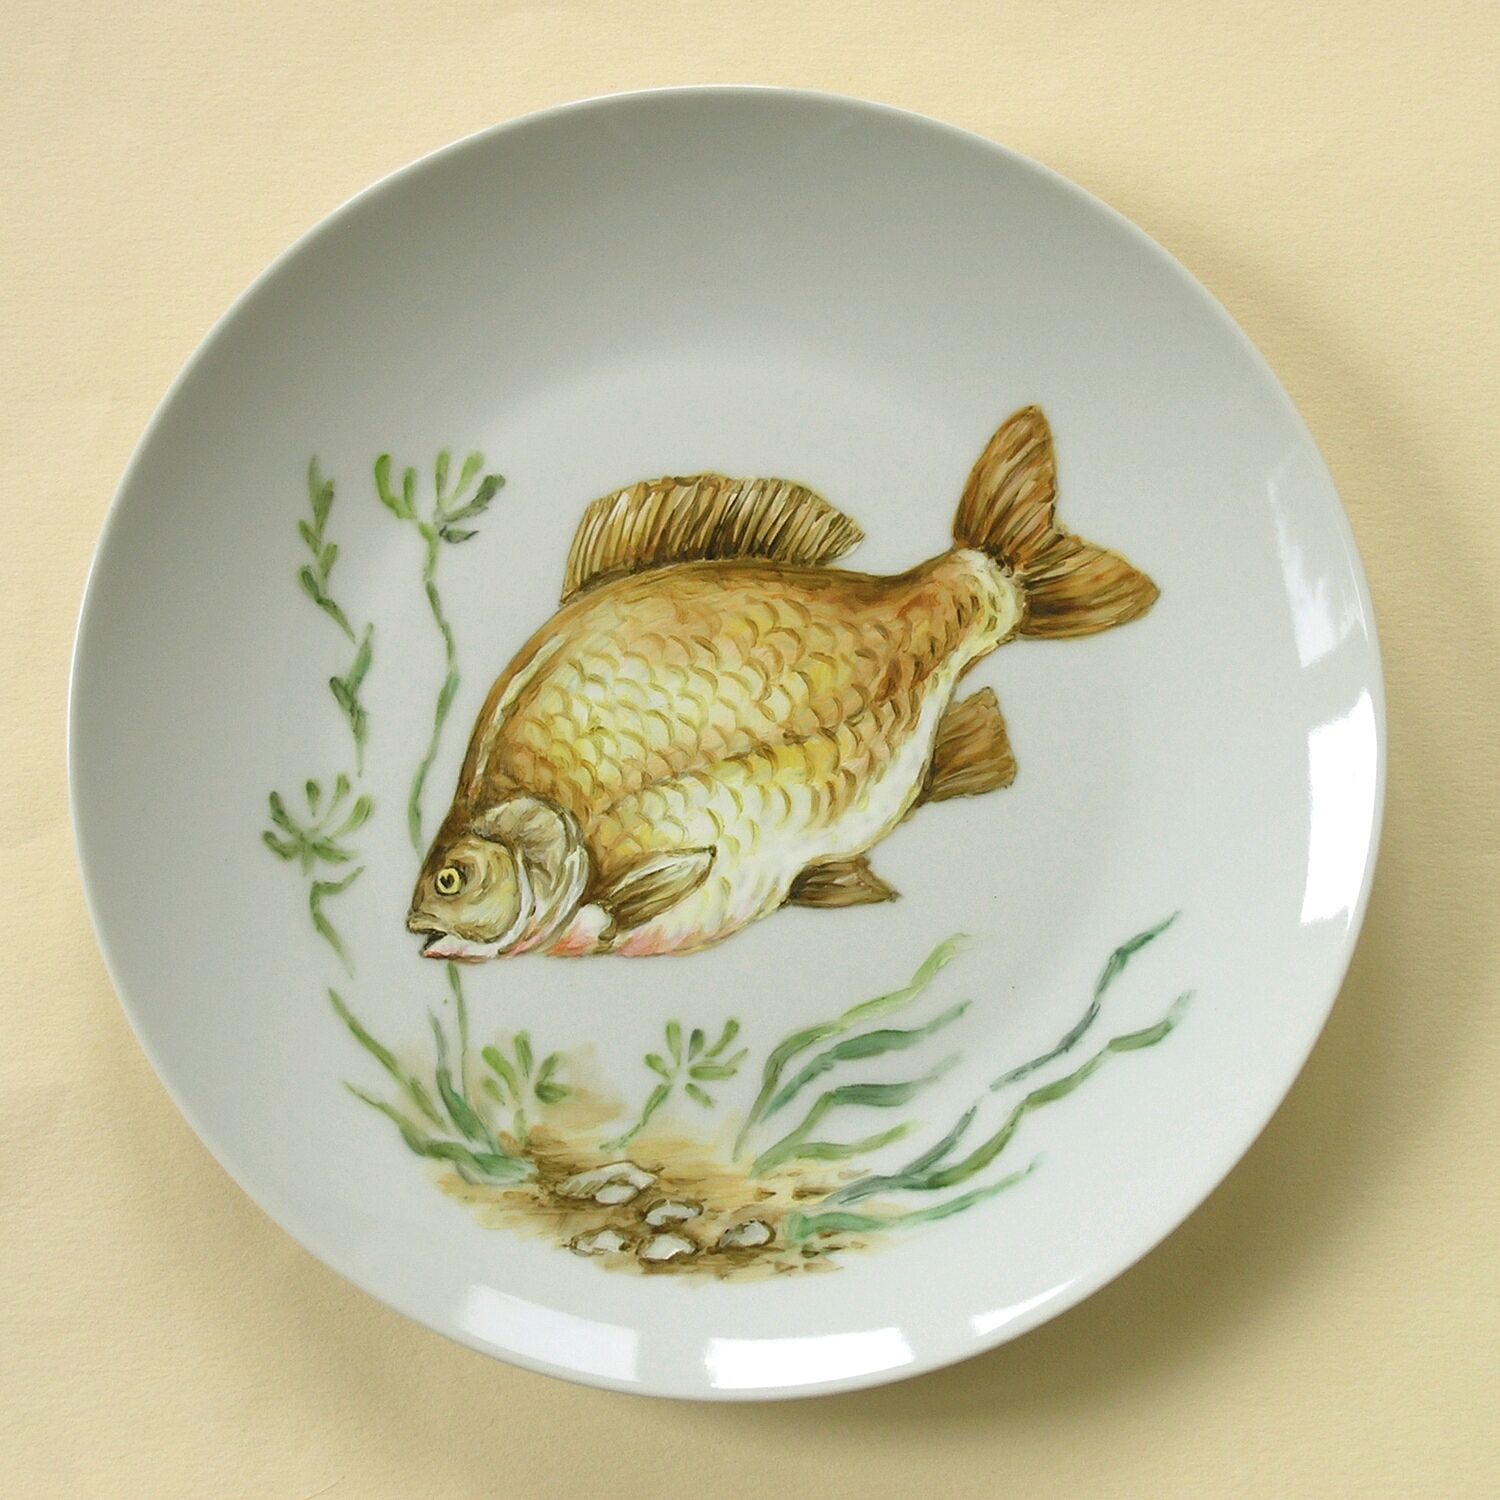 Тарелка рыбка. Рыба на тарелке. Тарелка с рыбками. Тарелка с изображением рыбы. Тарелка с декоративной фигуркой рыбы.